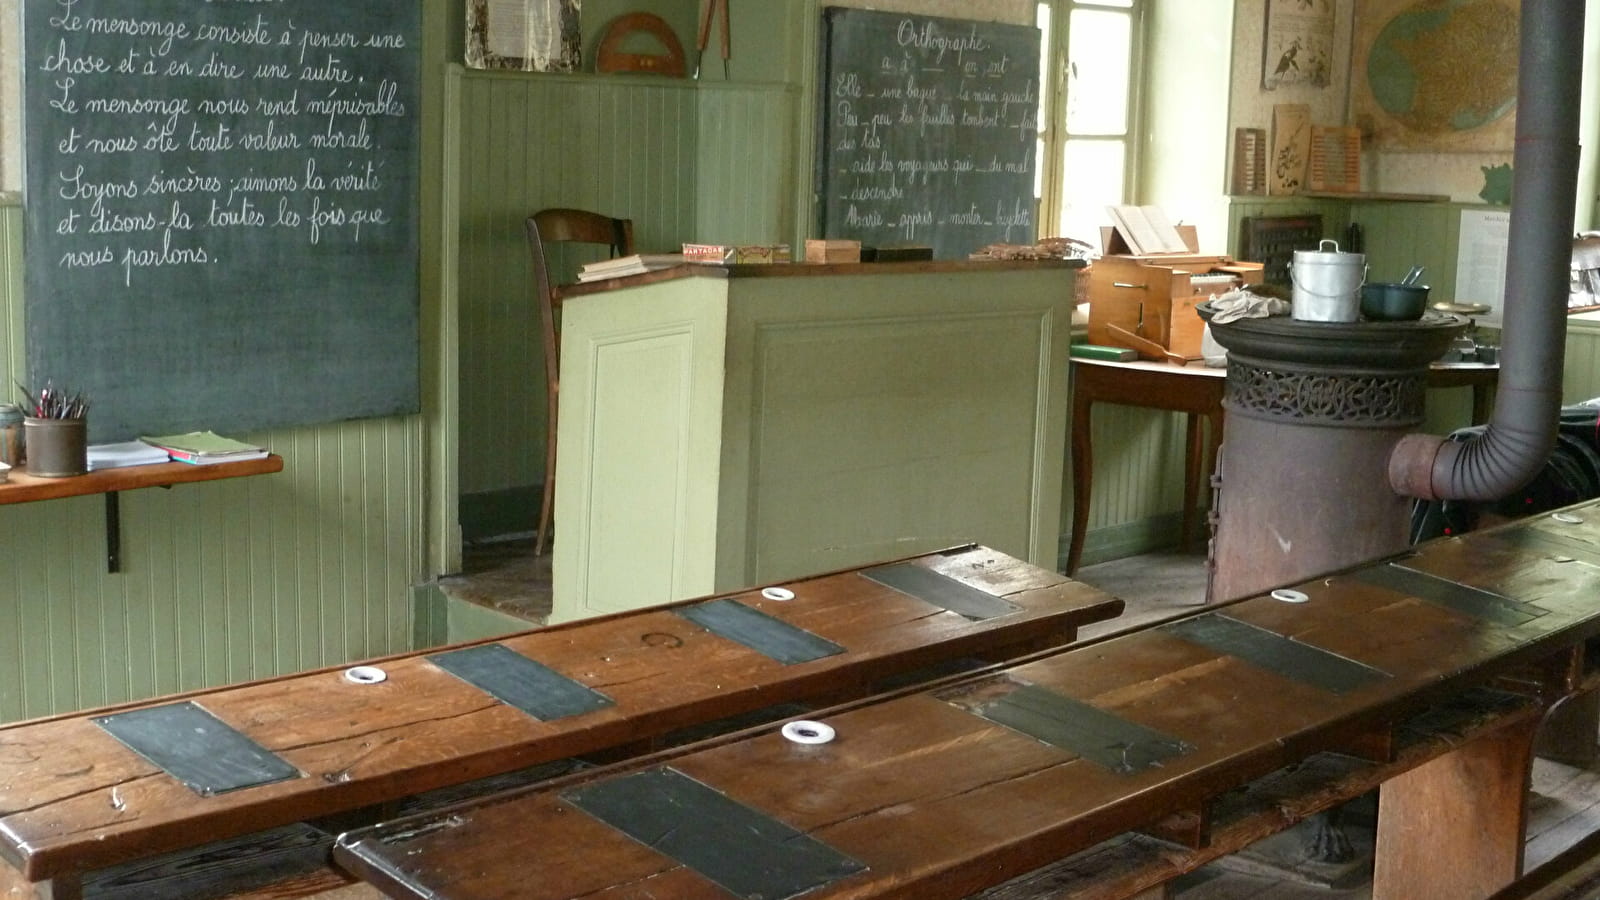 École-musée de Champagny